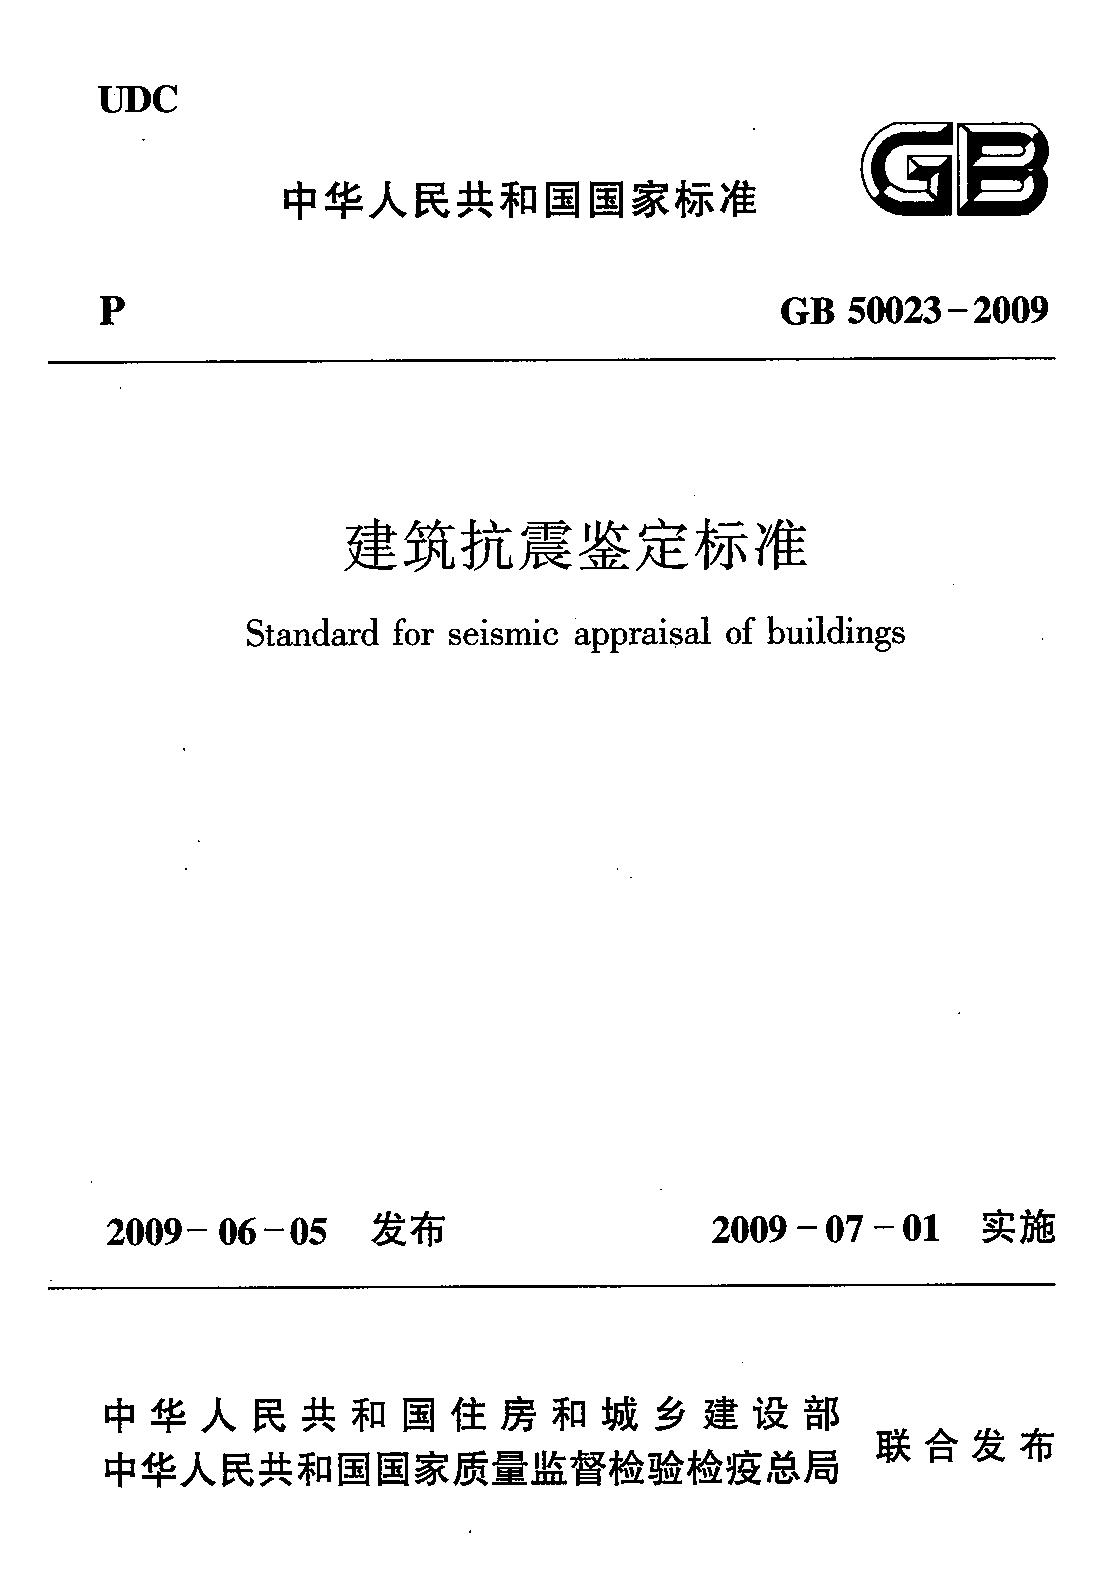 建筑抗震鉴定标准（GB 50023-2009 ）_00.jpg